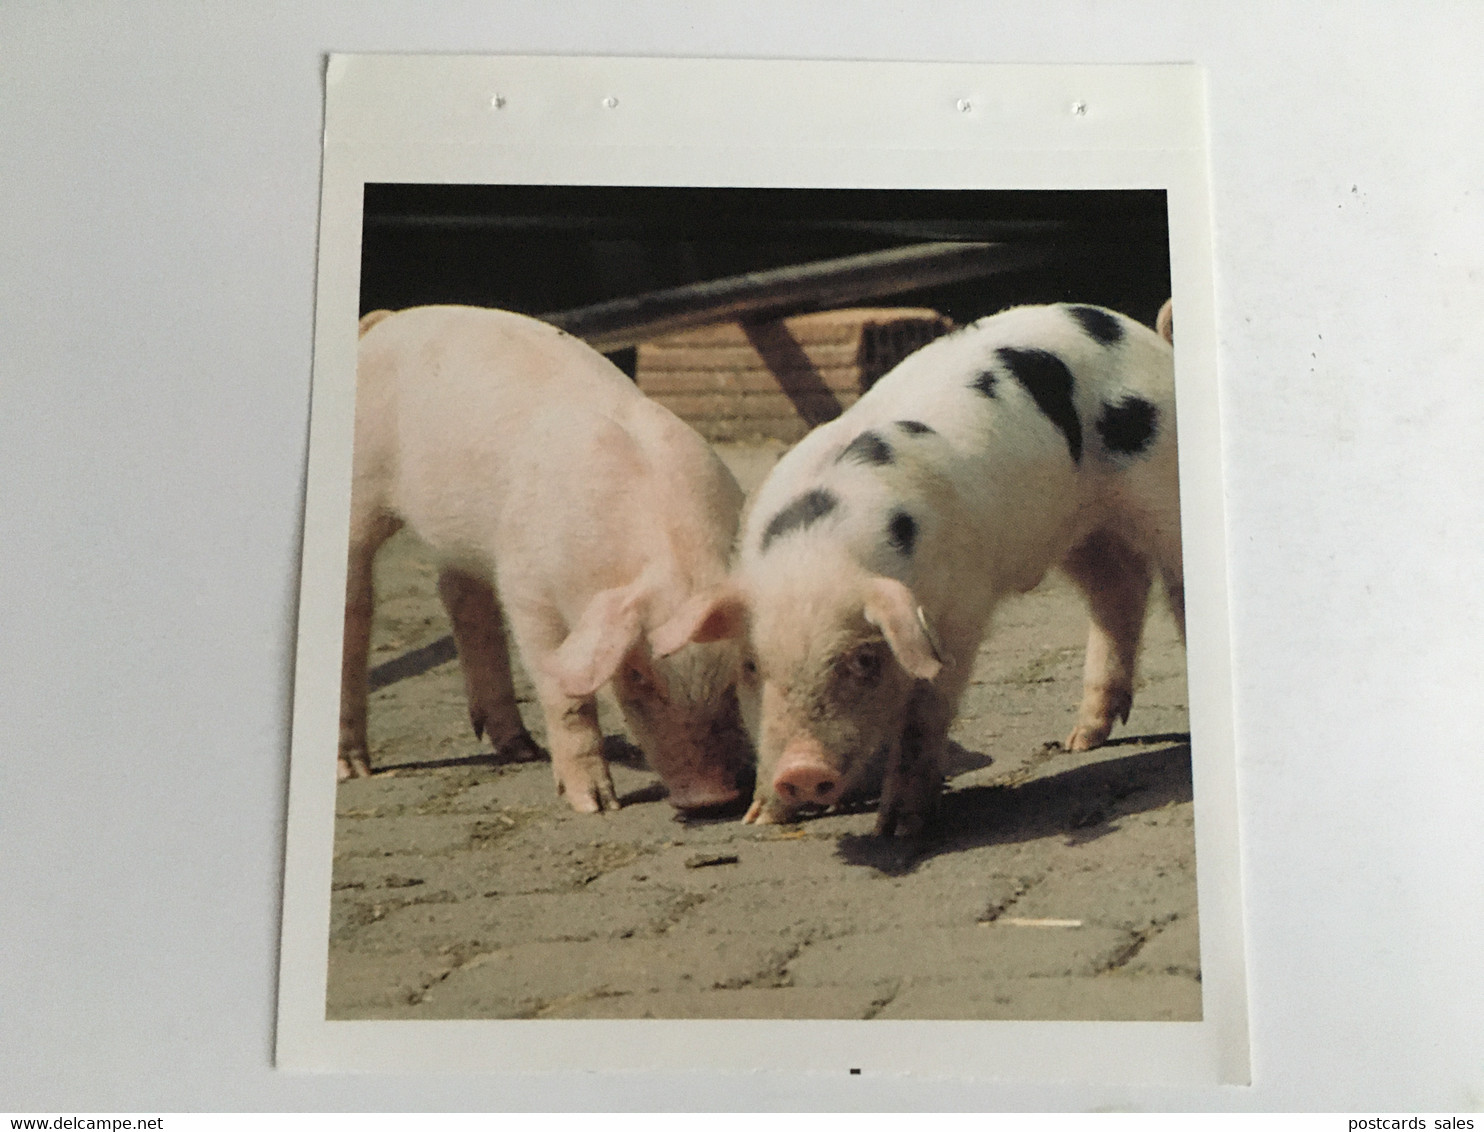 Pig Cochon Schwein - Cochons